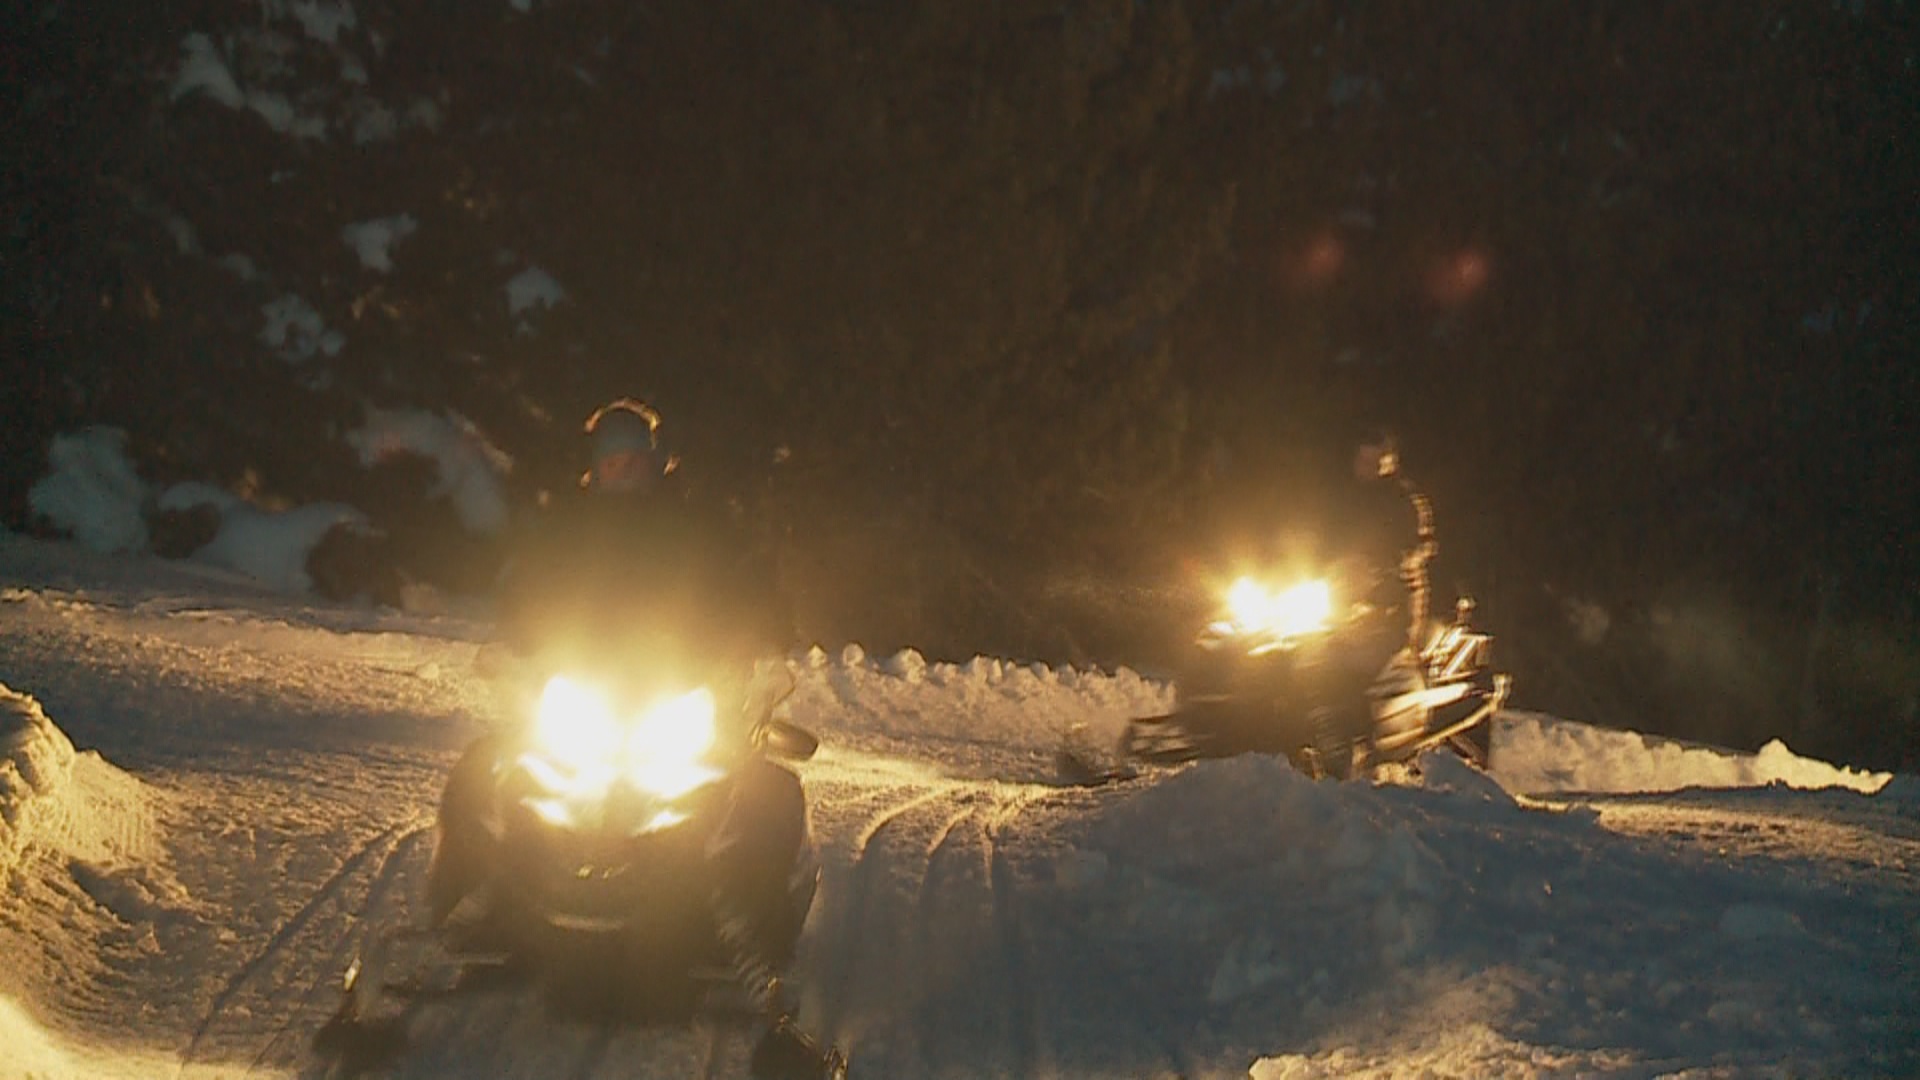 Reportatge: Excursió nocturna en moto de neu a Naturlàndia